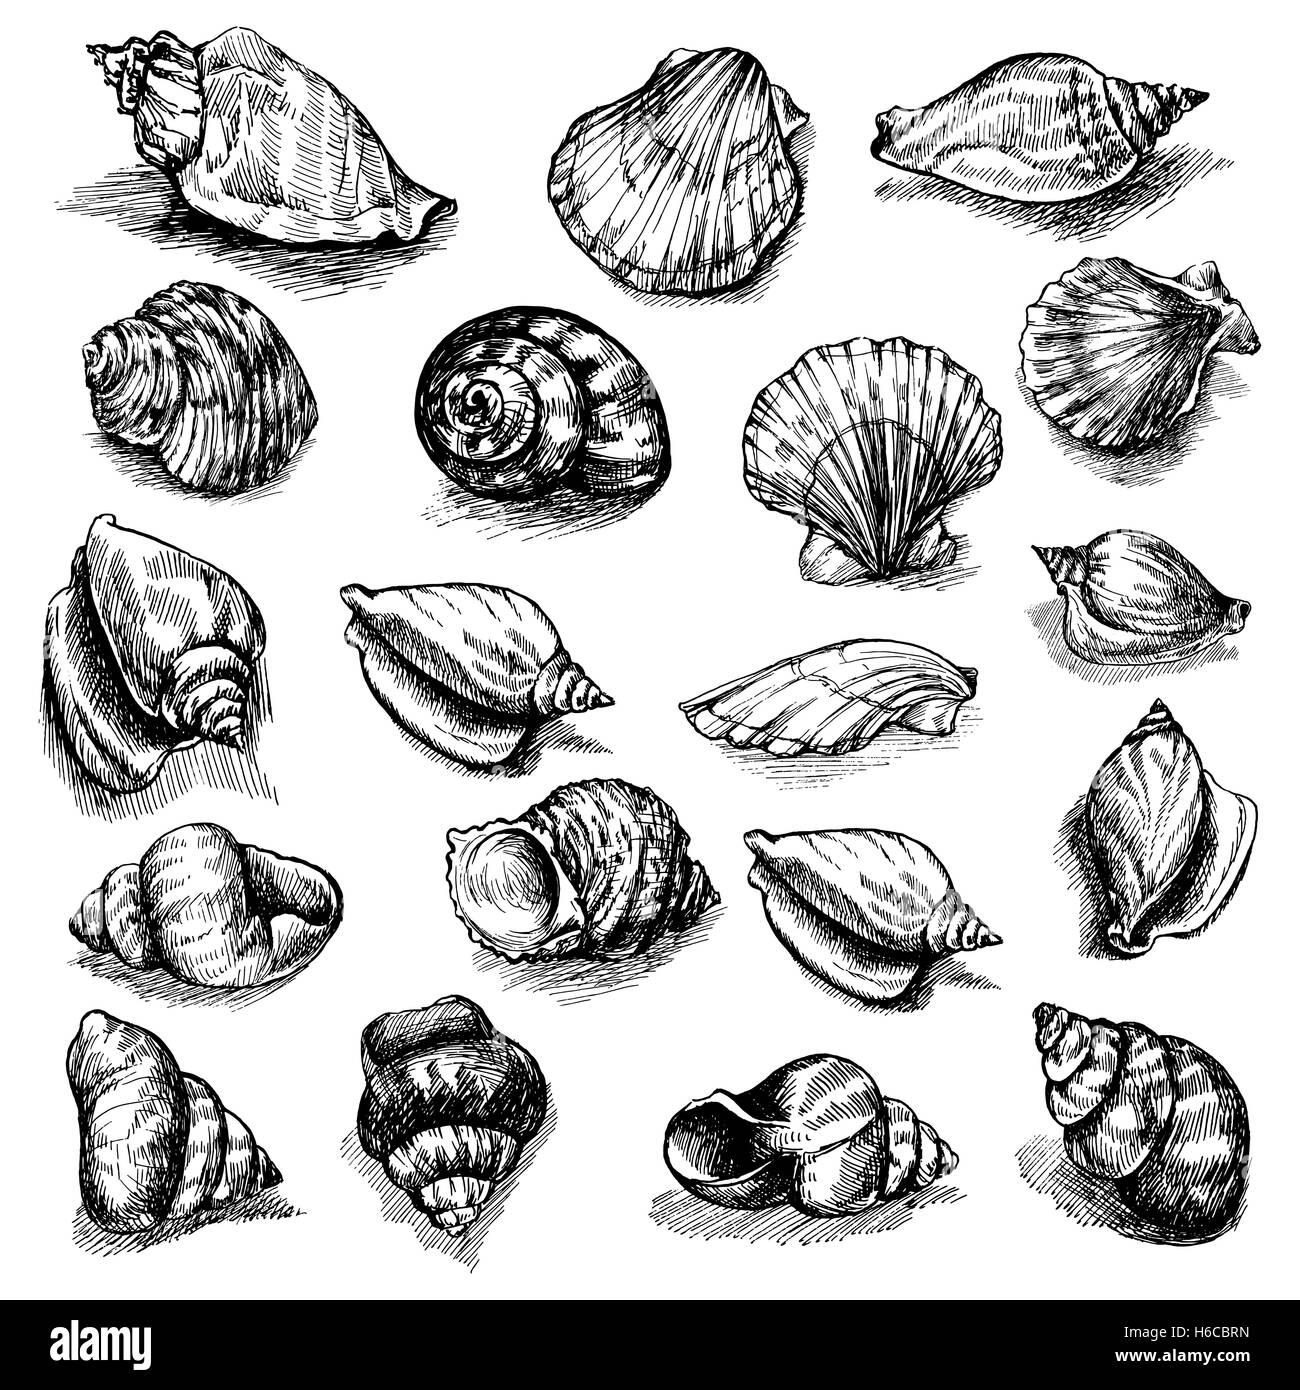 Großen Vektor Sammlung von skizzierten Muscheln isoliert auf weißem Hintergrund. Handgezeichnete Meer-Tiere-set Stock Vektor